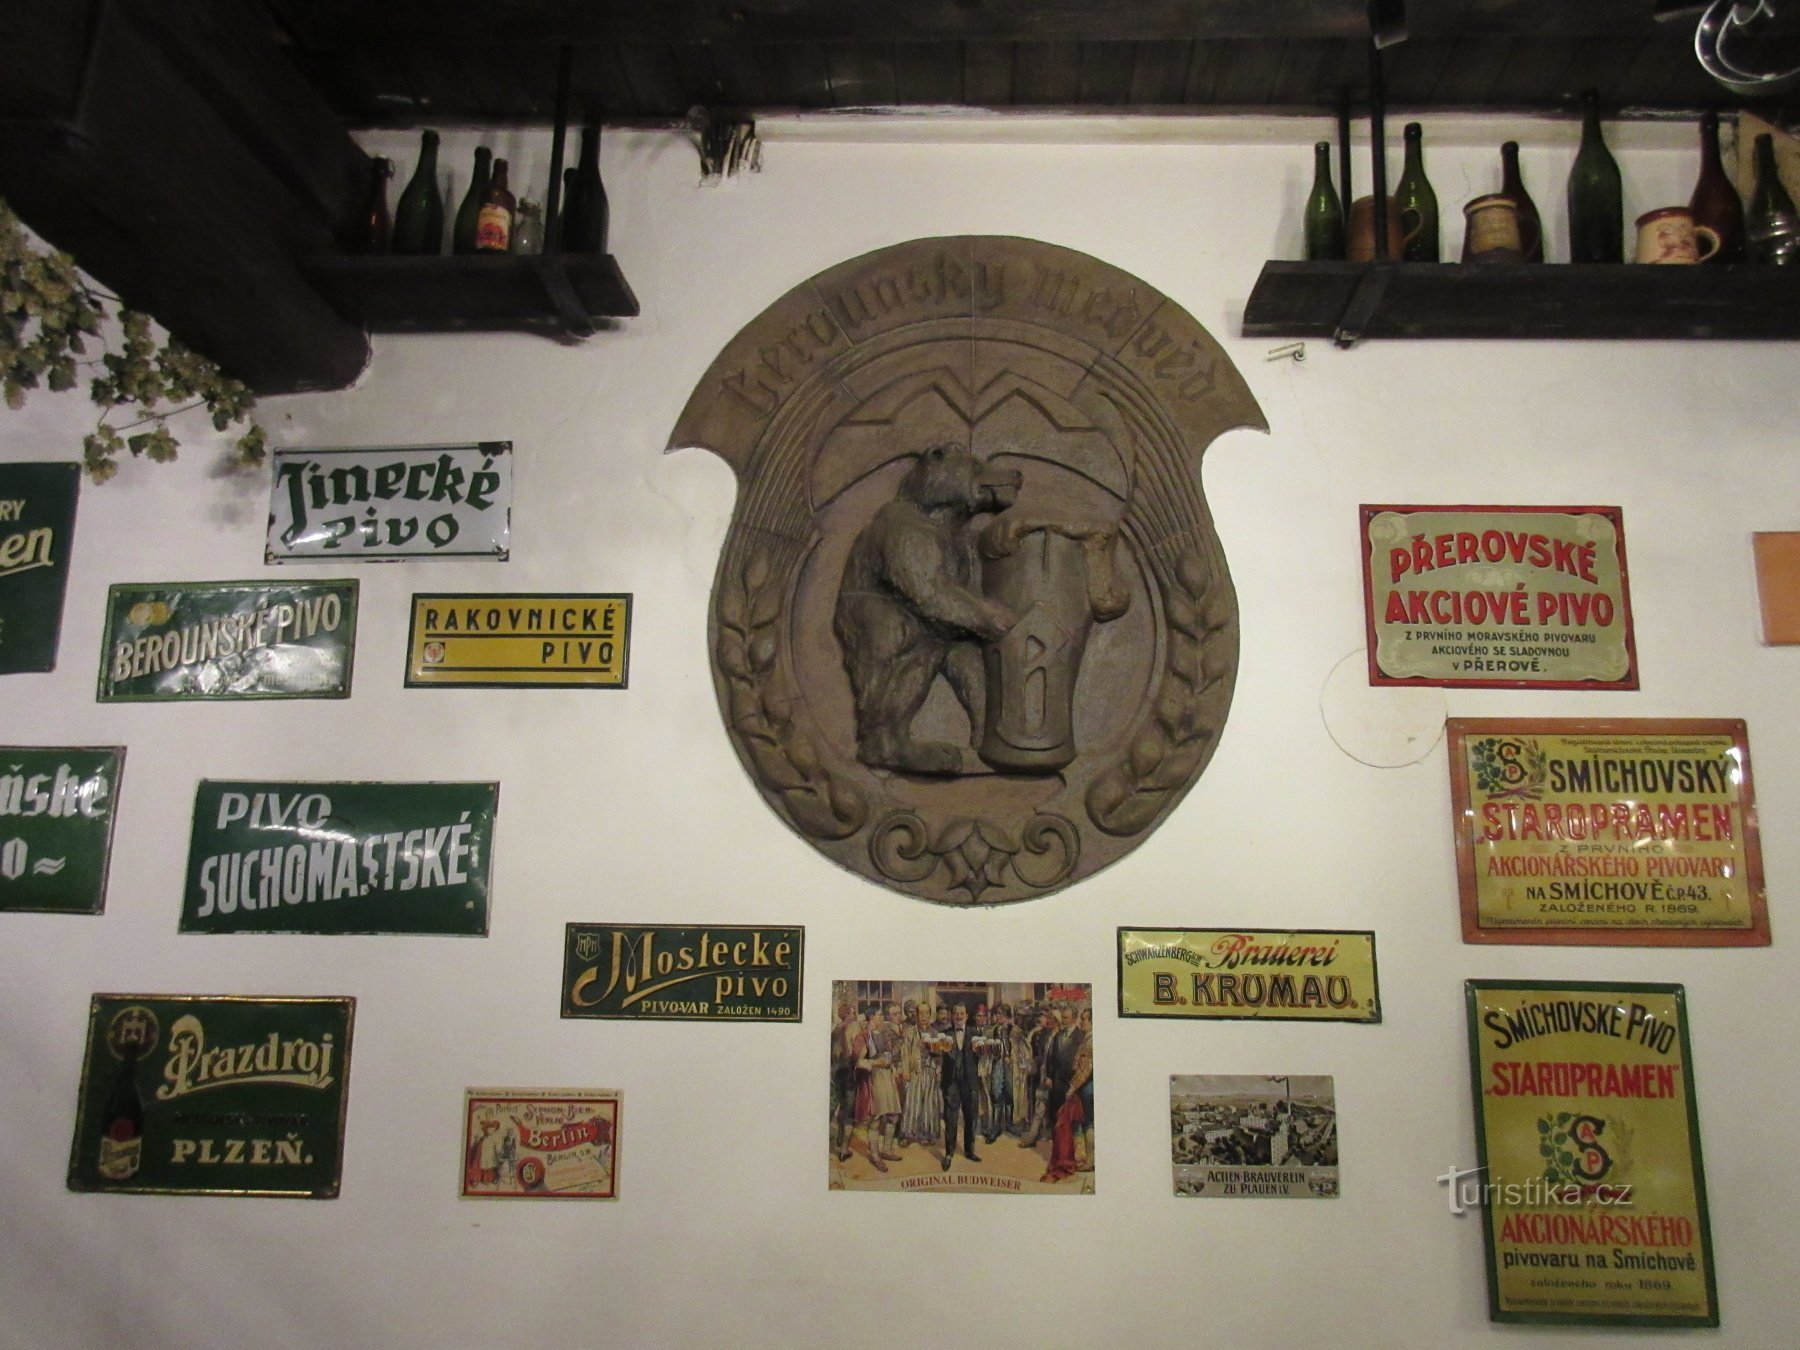 L'histoire du brassage à Beroun et de la brasserie familiale Berounský medvěd